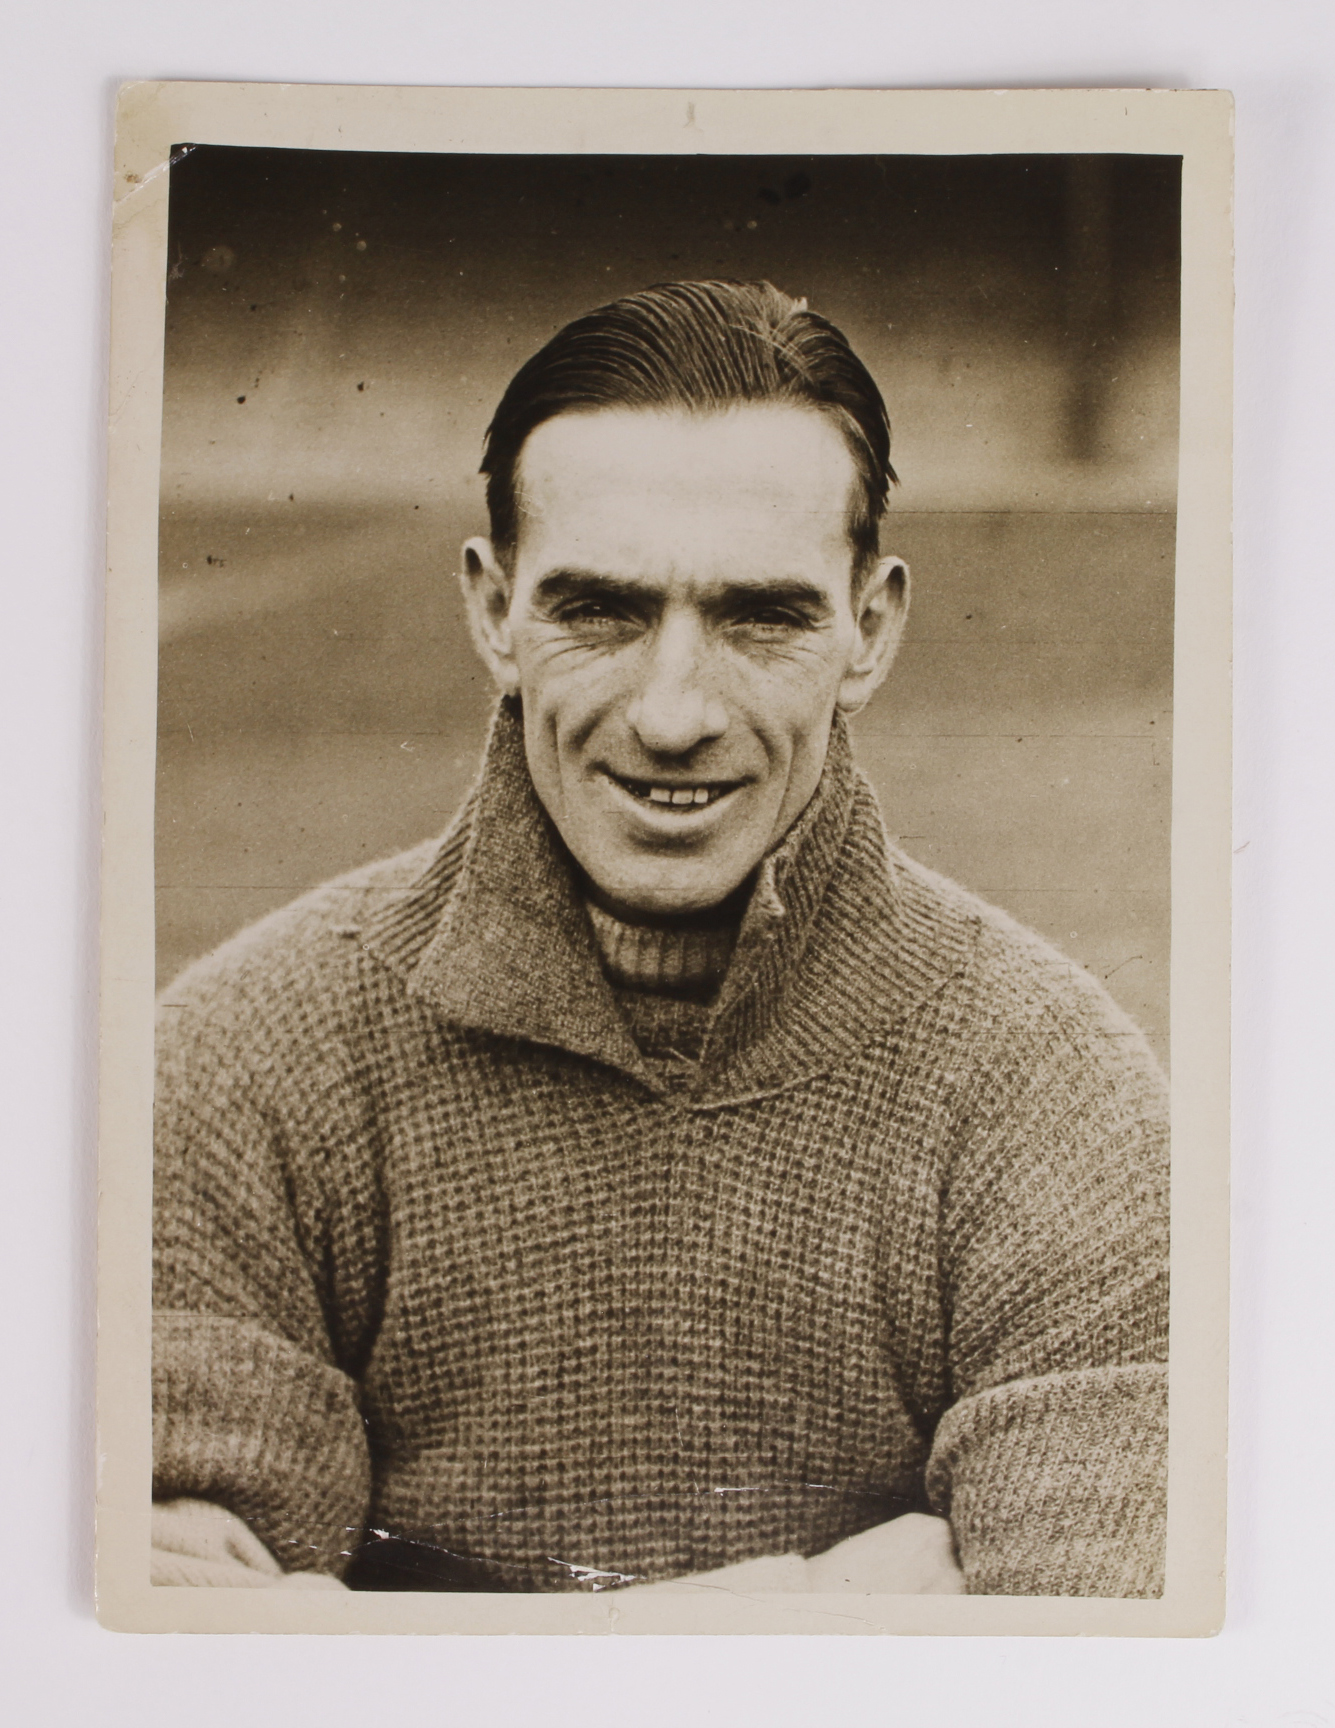 Cardiff City Jimmy Gill (6"x4.5") b&w press photo, head / shoulders. In training gear c1924/25. Gill